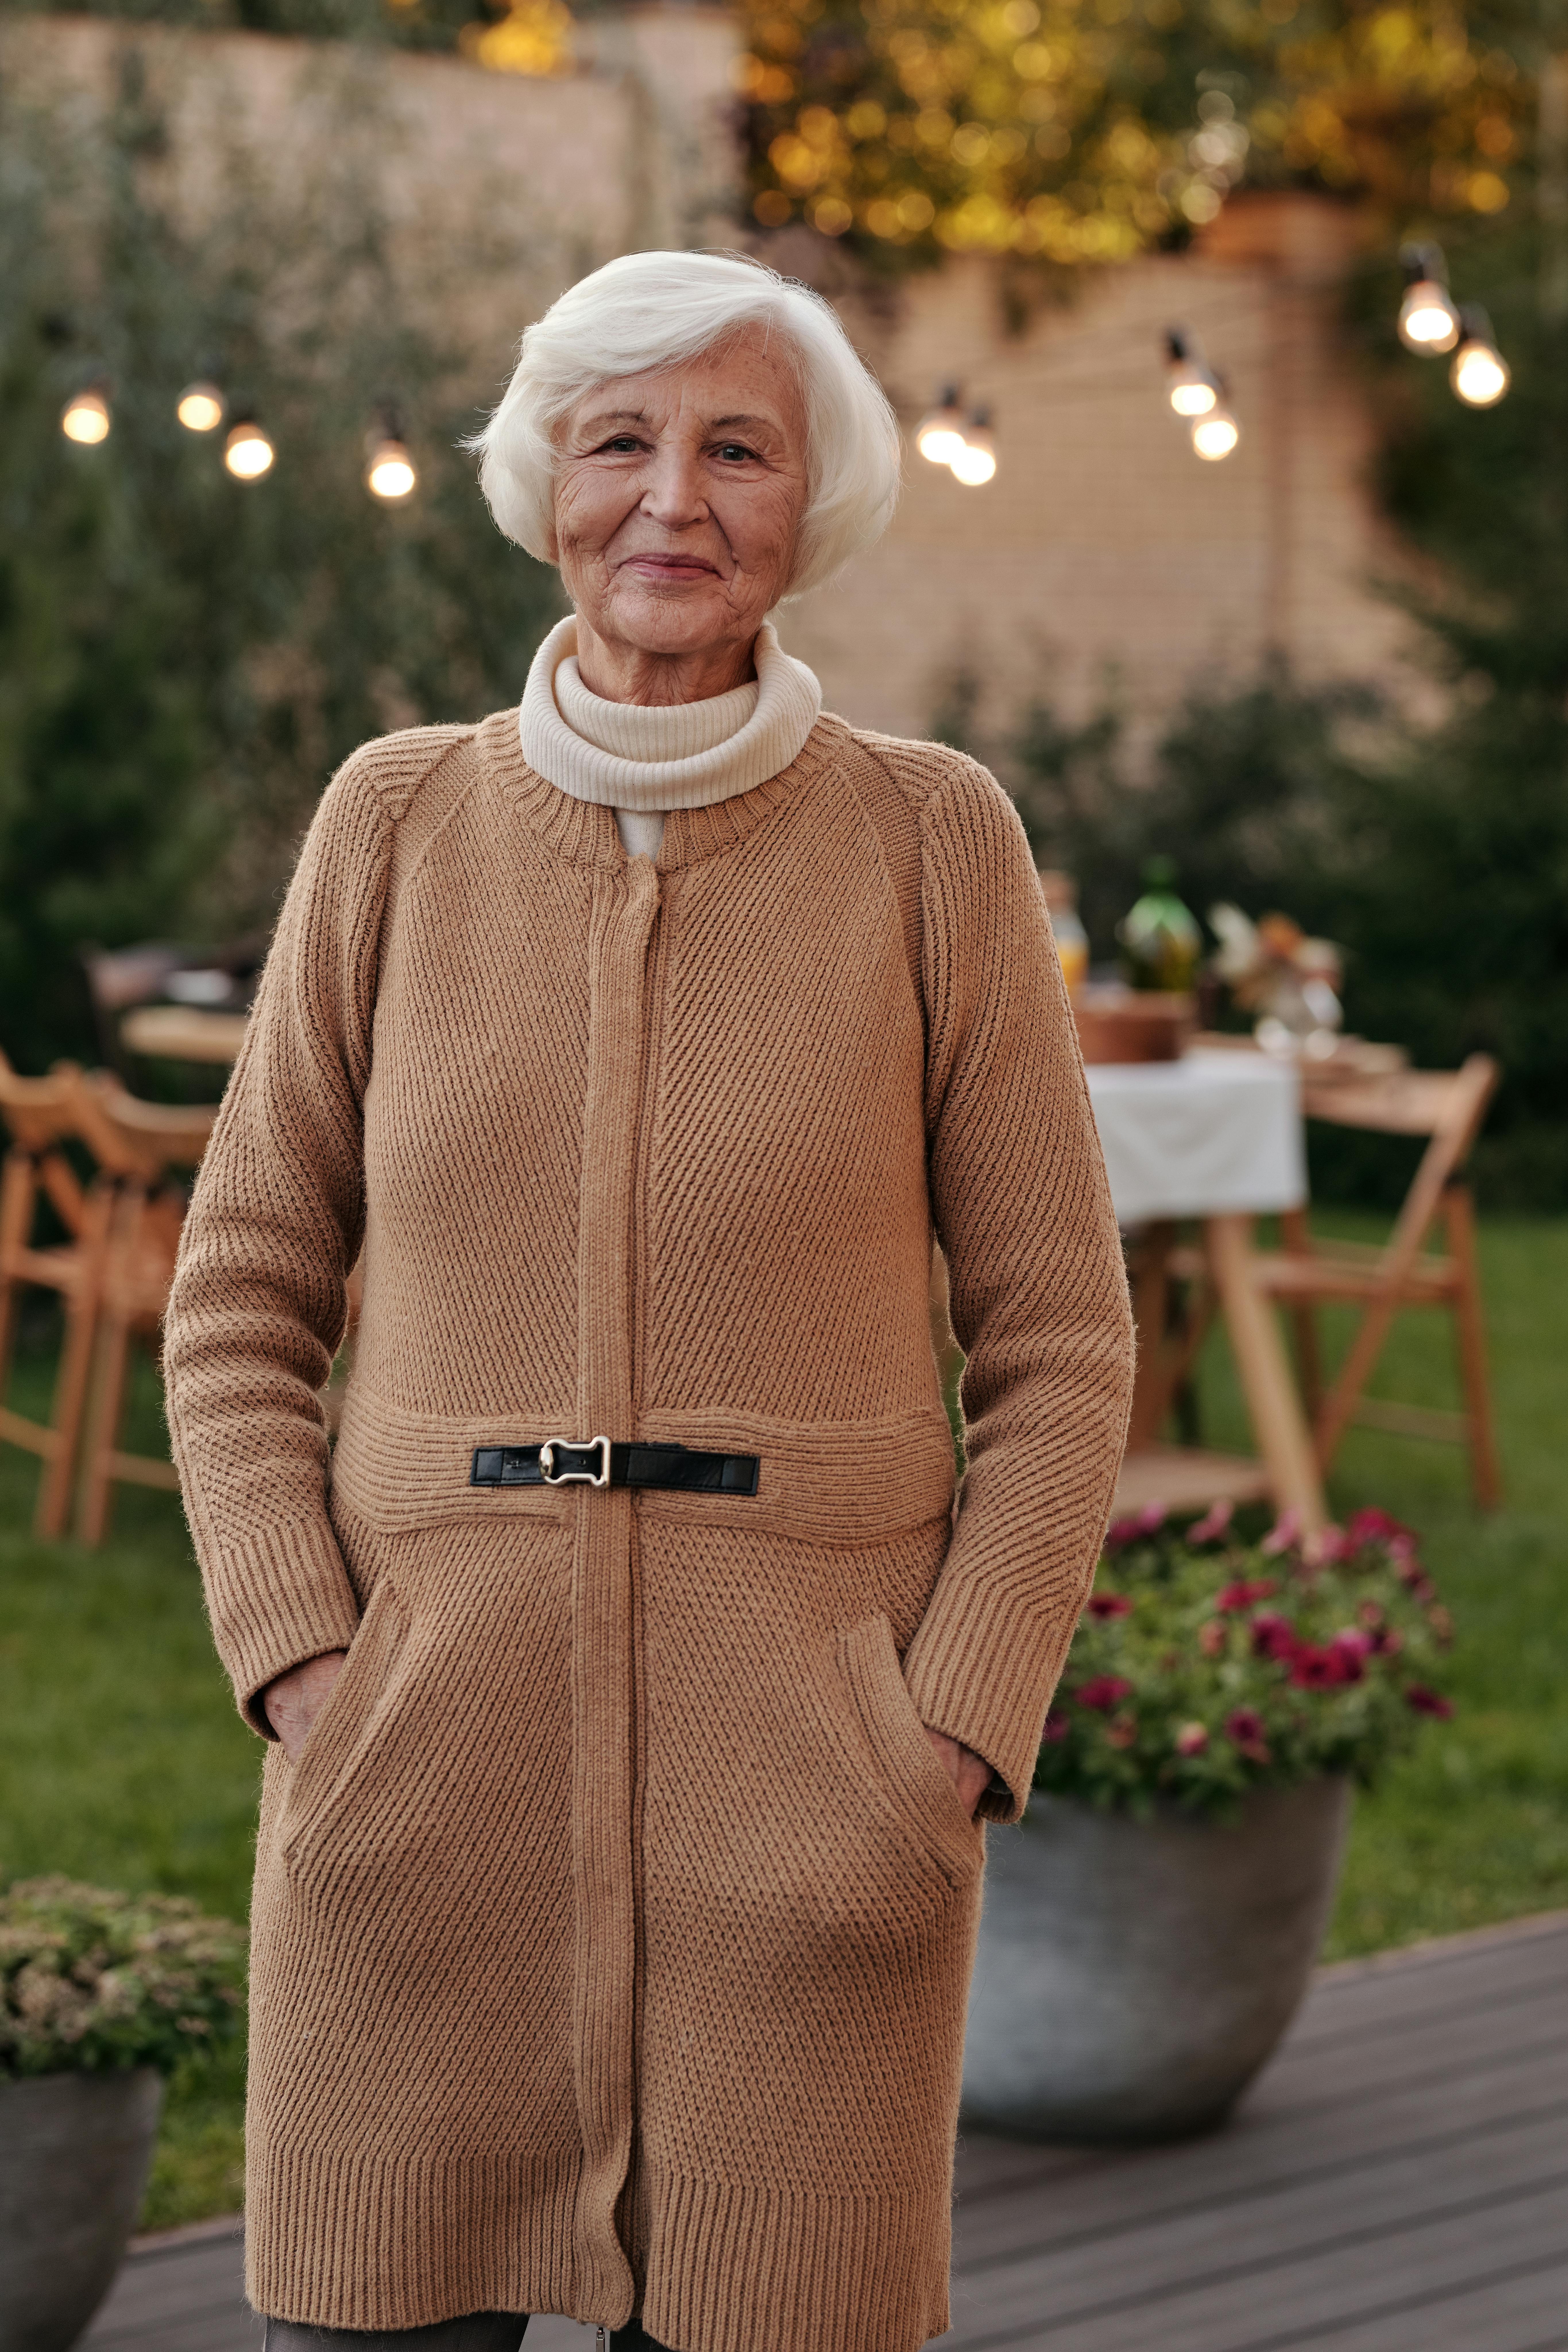 Une femme âgée heureuse et fière pose pour une photo à l'extérieur | Source : Pexels